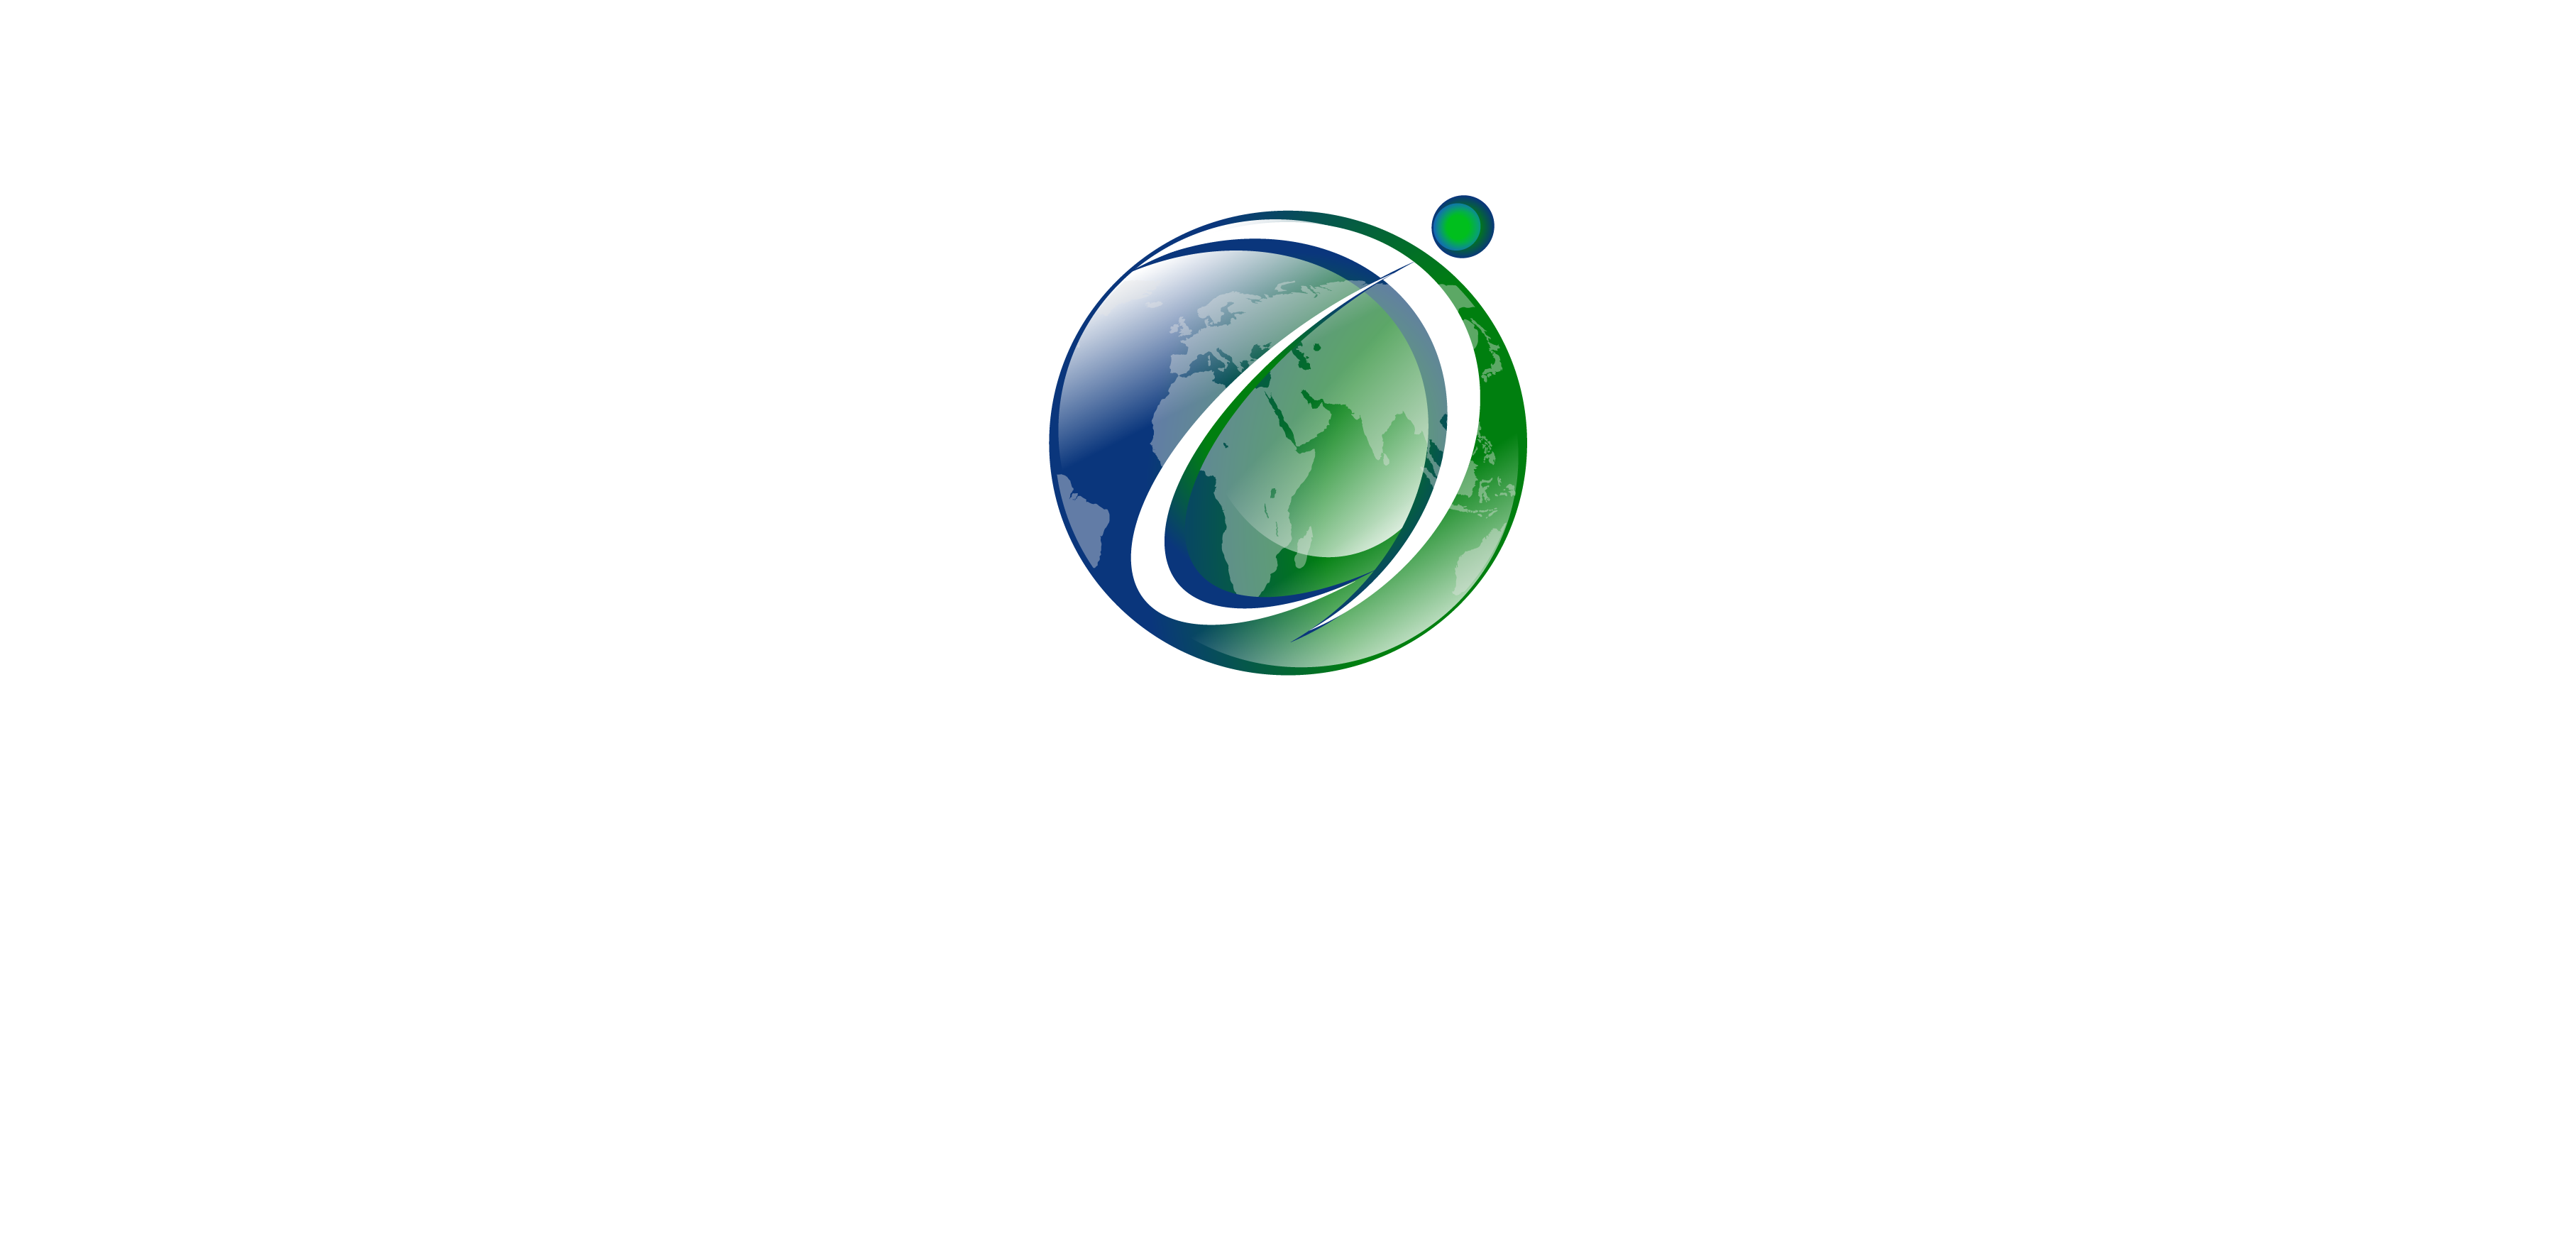 (c) Aircoustics.com